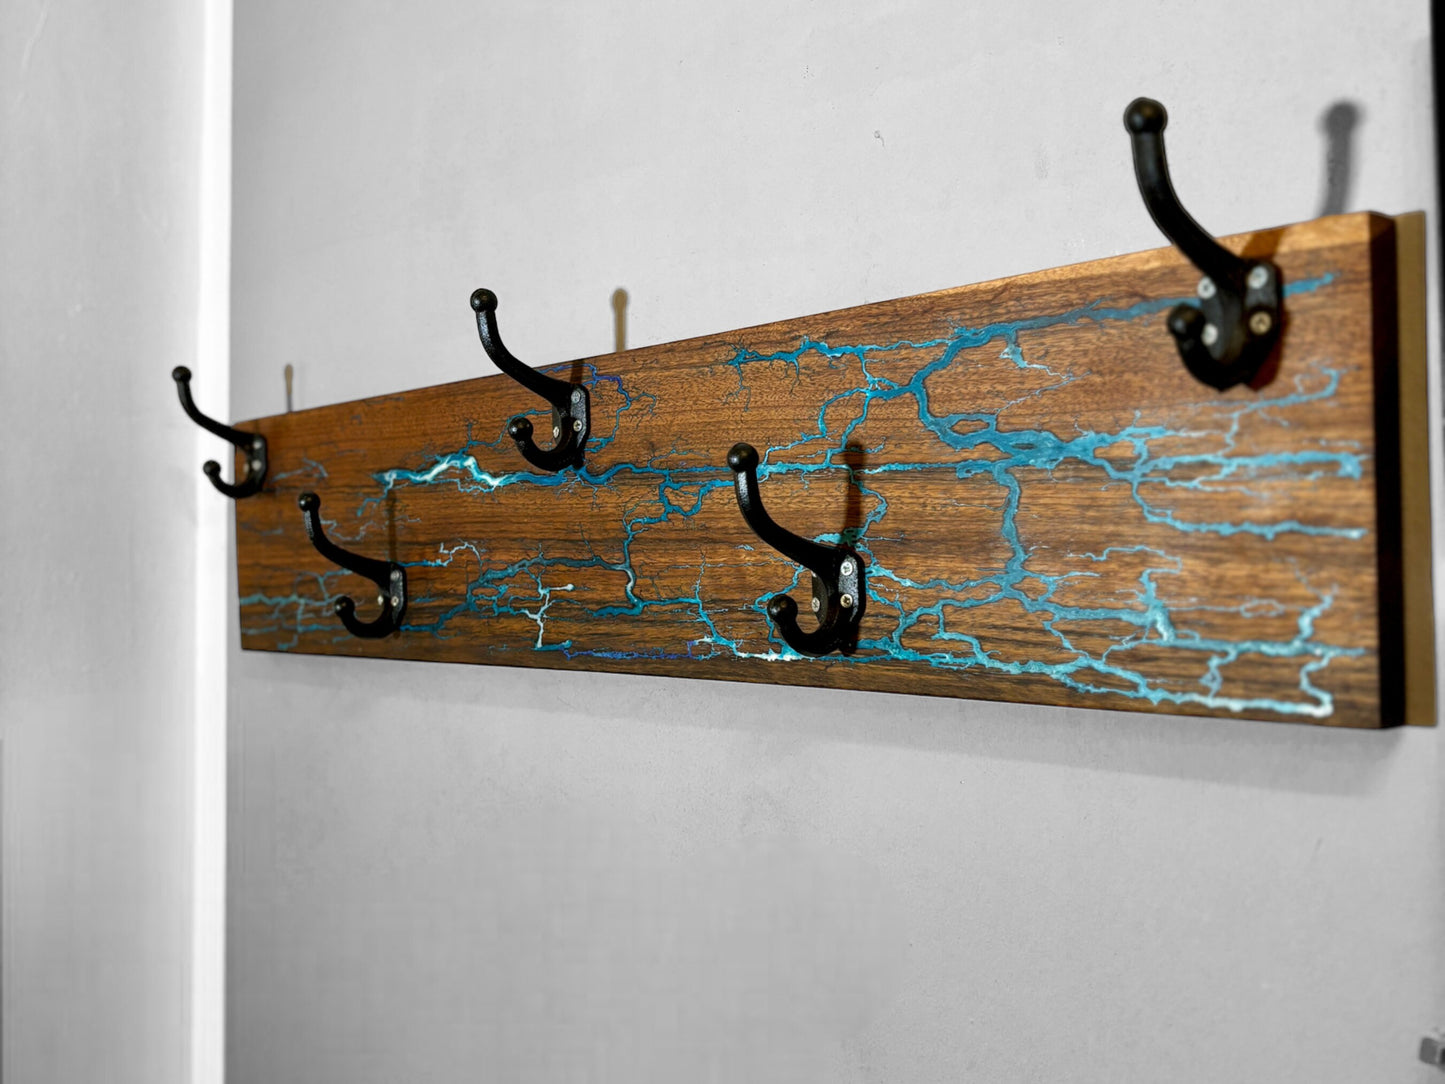 Wandgarderobe aus Nussholz mit Lichtenberg-Figuren und Epoxidharz - Exklusive Holzgarderobe Einrichtung Design-Ideen Einzelstück Handmade